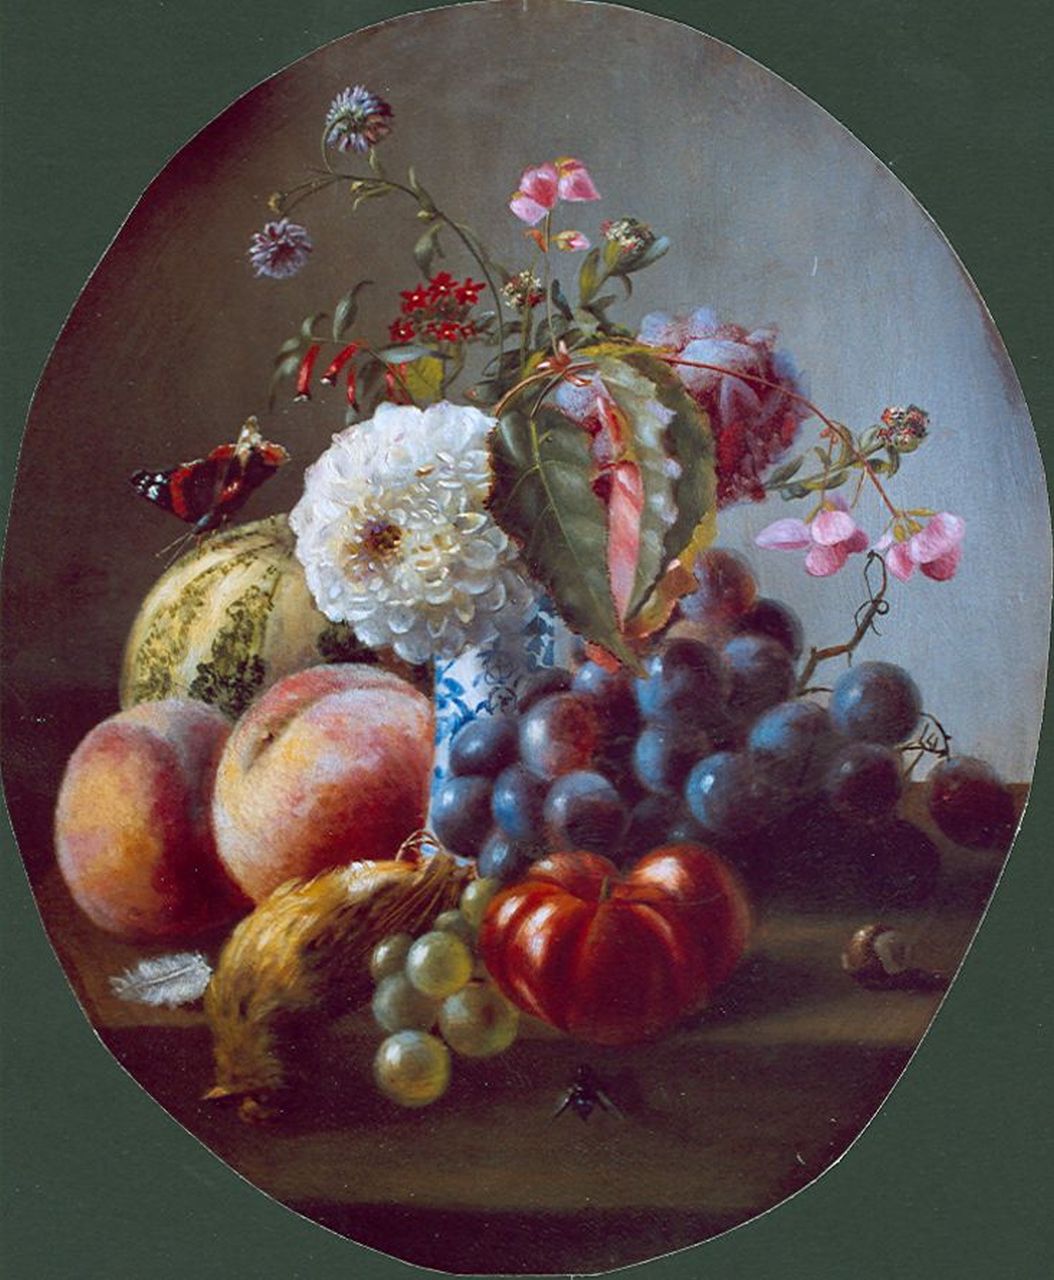 Roosenboom M.C.J.W.H.  | 'Margaretha' Cornelia Johanna Wilhelmina Henriëtta Roosenboom, Stilleven van bloemen en vruchten, olieverf op paneel 40,0 x 33,6 cm, gesigneerd middenonder en gedateerd 1859